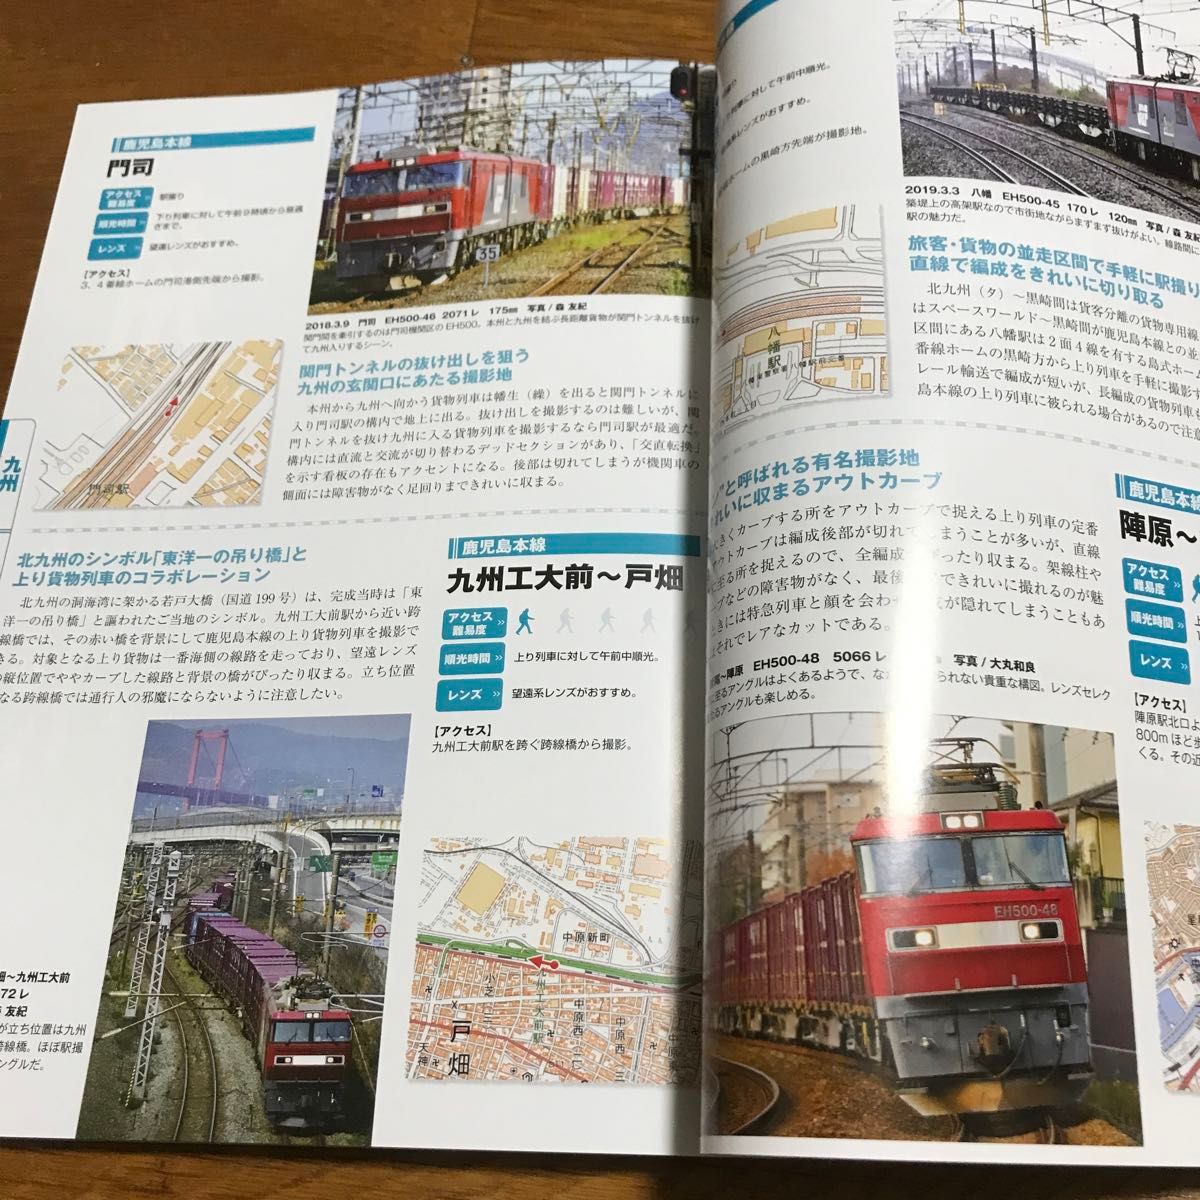 最新版! 西日本貨物列車撮影地ガイド 定番お立ち台が一目瞭然!